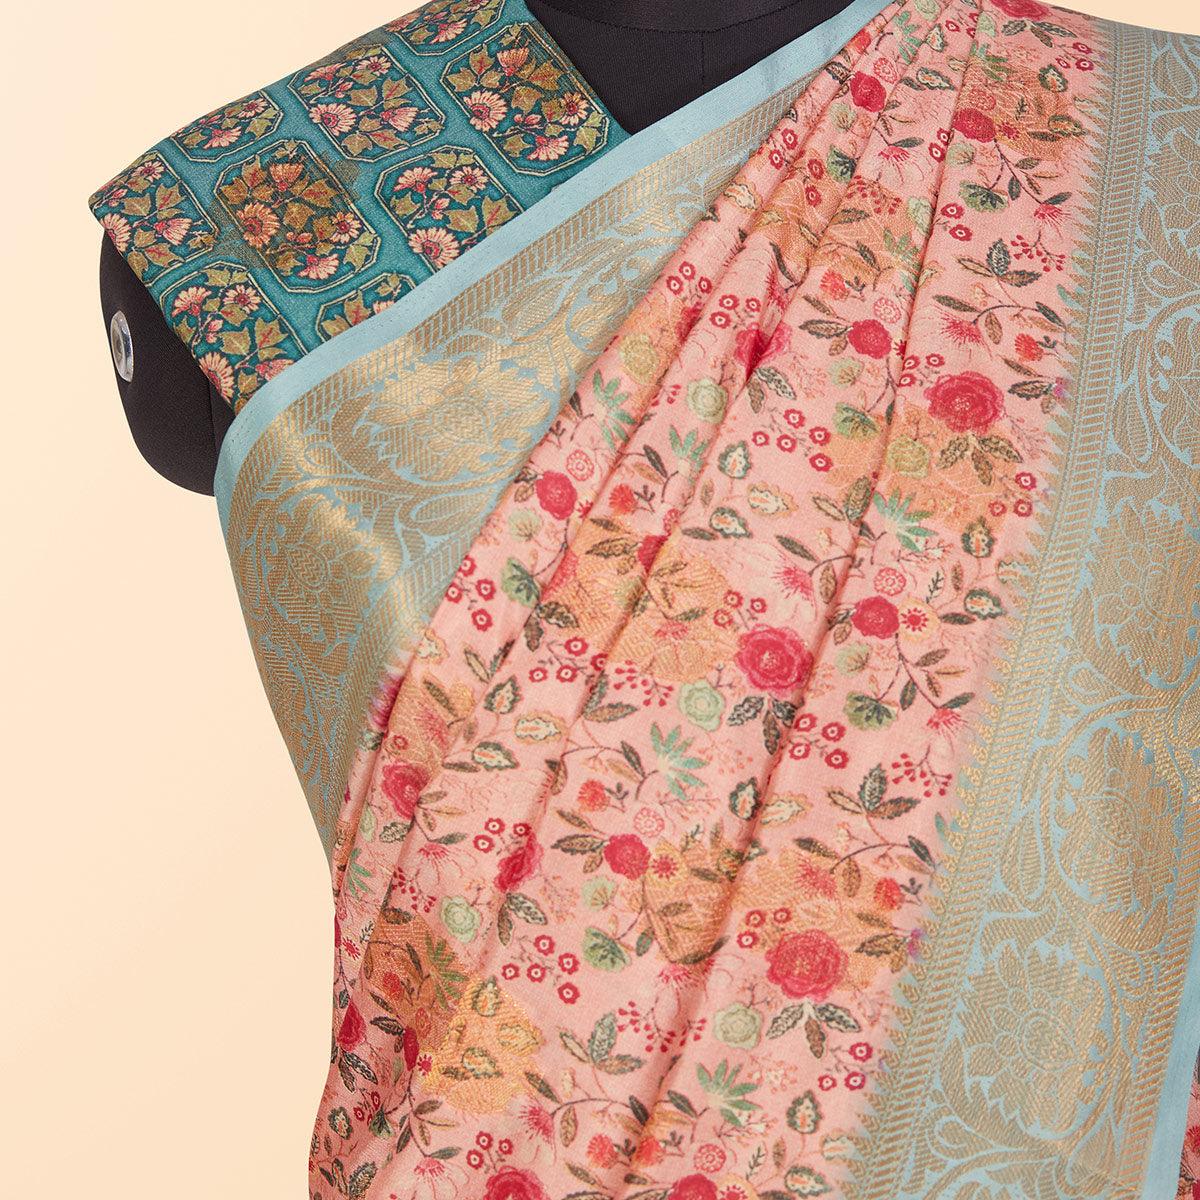 Peach Festive Wear Floral Digital Printed Woven Silk Saree - Peachmode